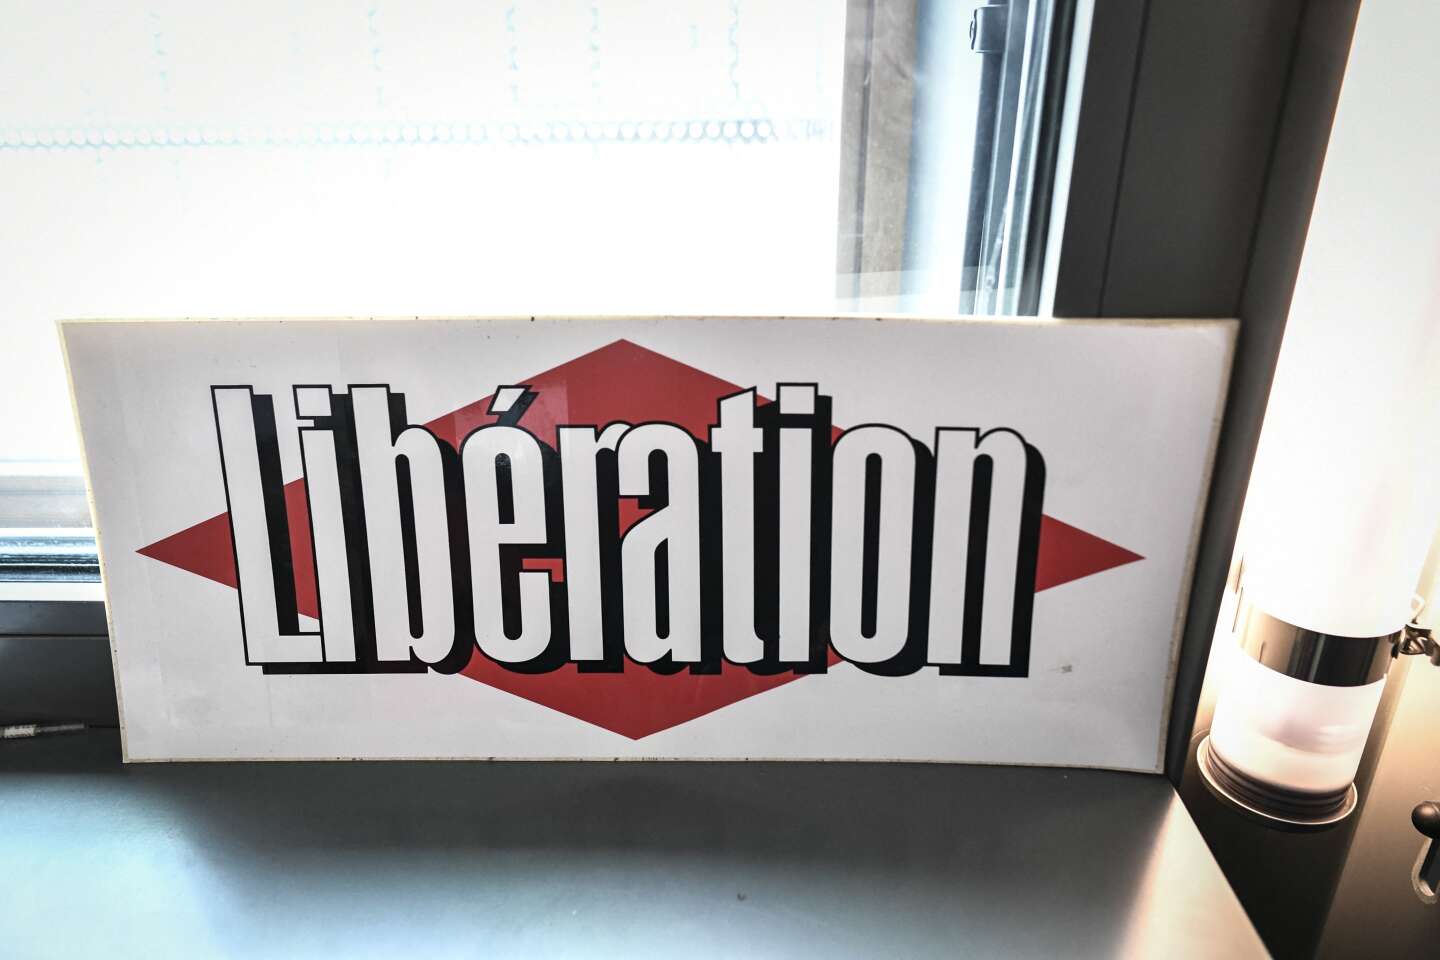 Trois journalistes de « Libération » convoqués par la police à Lille, le journal dénonce une « procédure inadmissible »